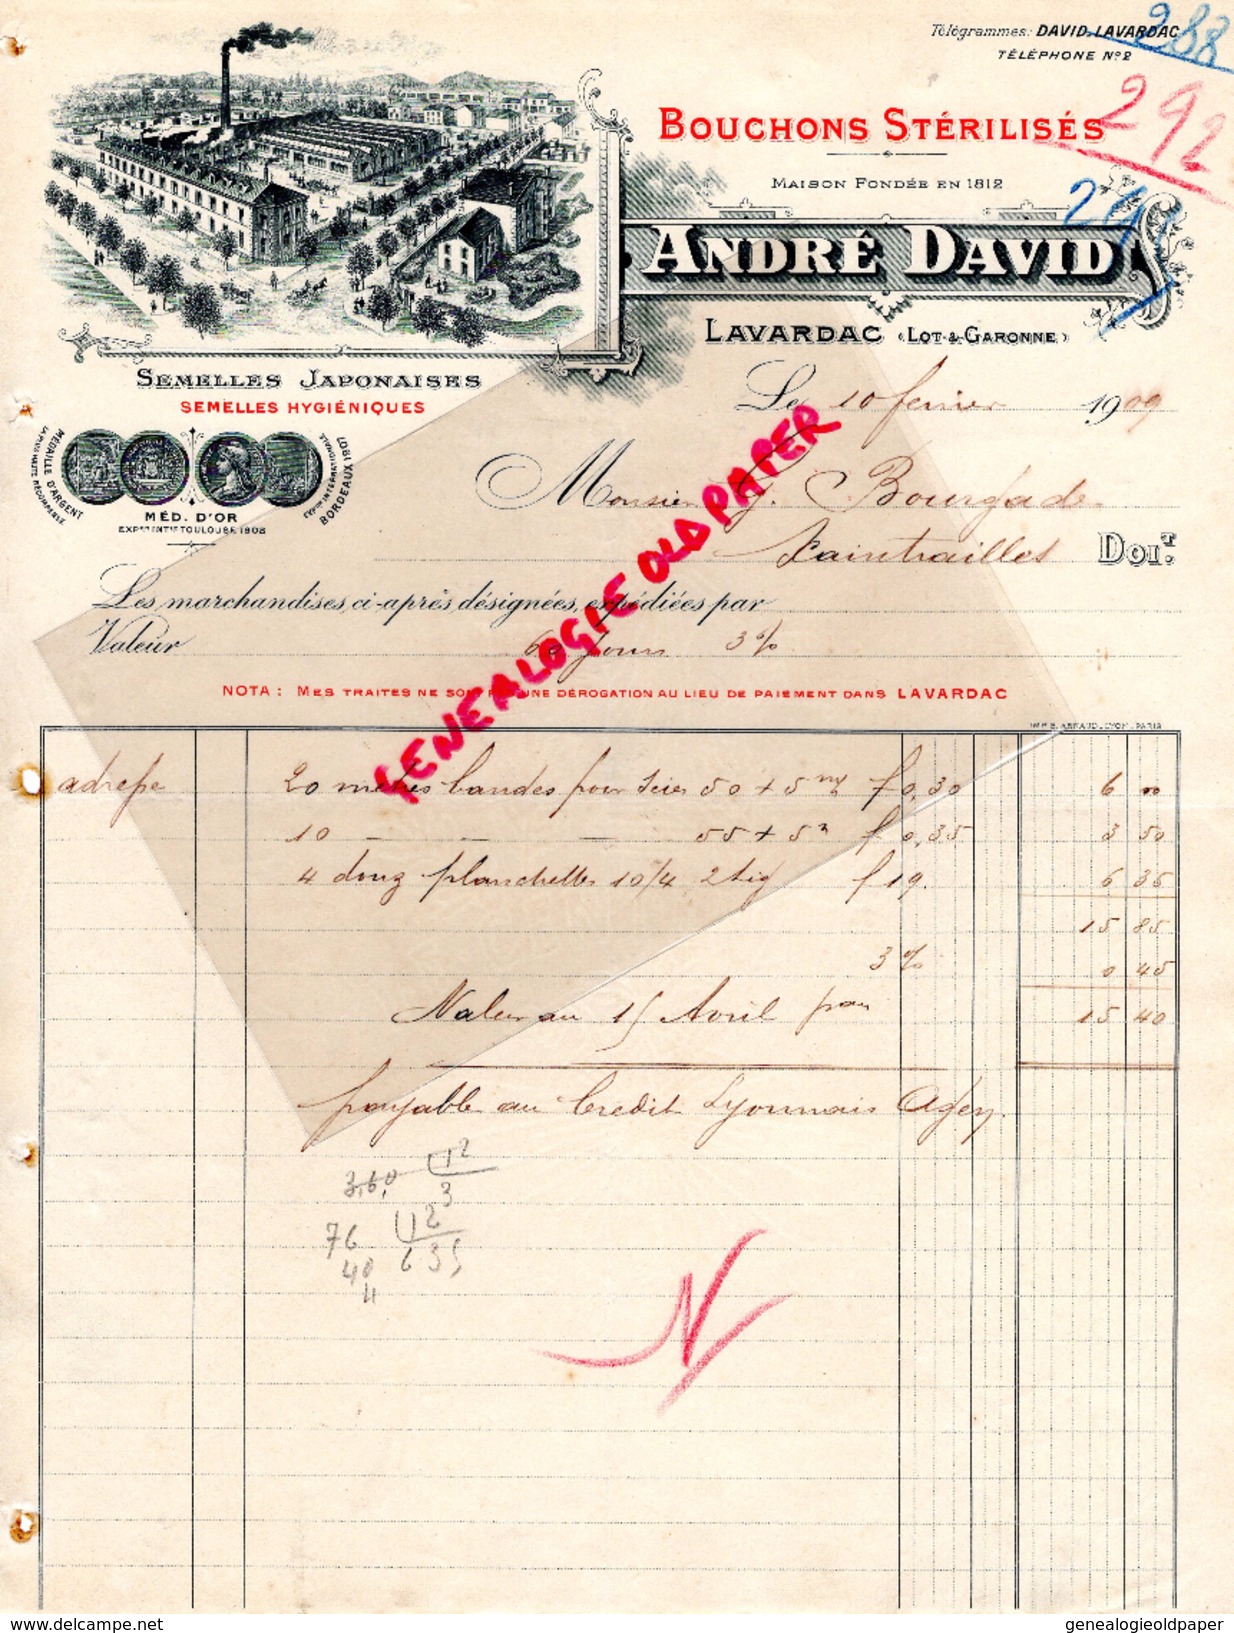 47- LAVARDAC- FACTURE ANDRE DAVID-FABRIQUE BOUCHONS- SEMELLES JAPONAISES JAPON- 1909 LIEGES LIEGE - Old Professions